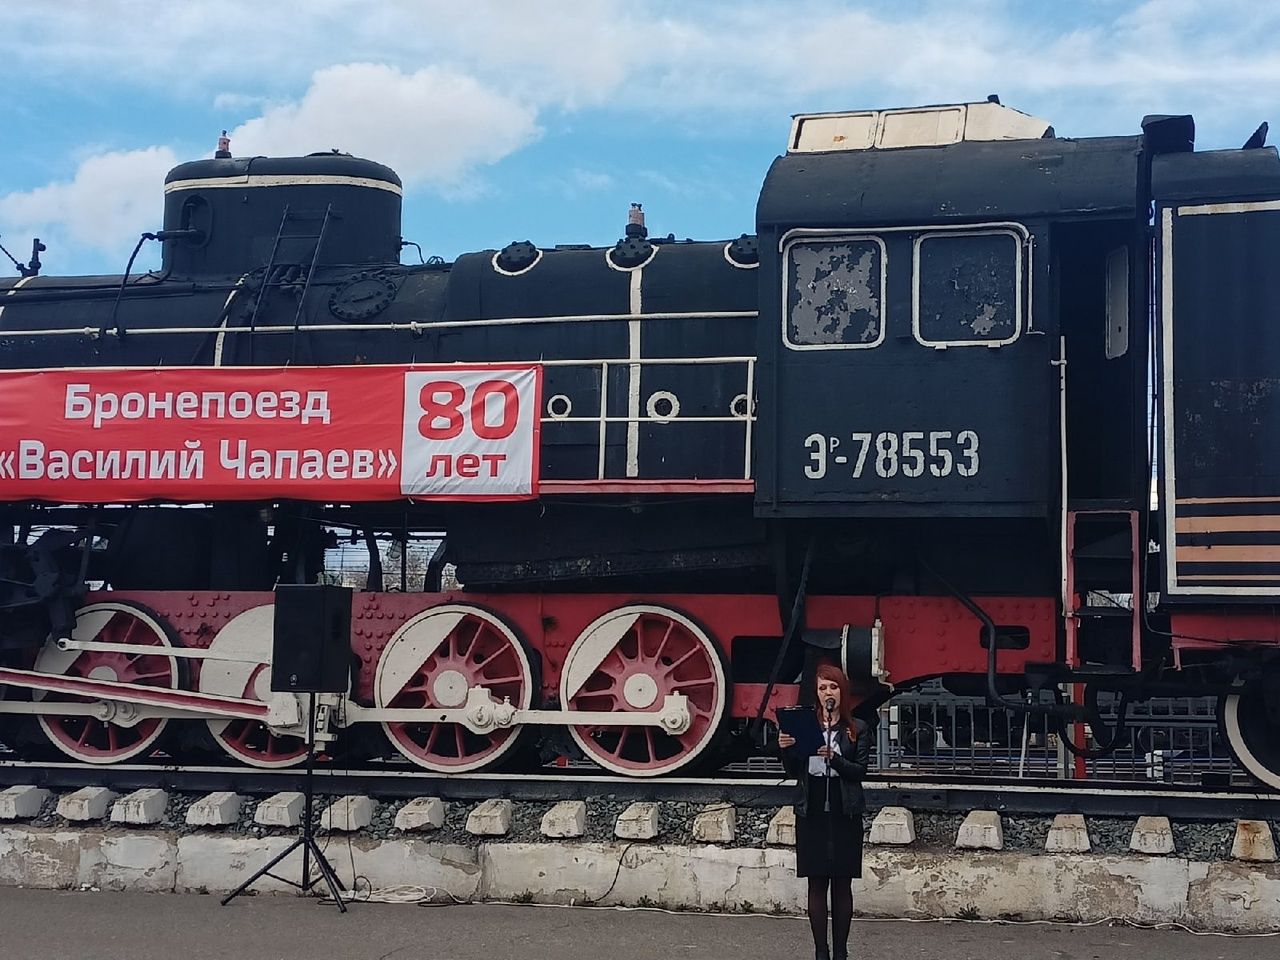 Железнодорожник из Агрыза посвятил стихи бронепоезду "Василий Чапаев"